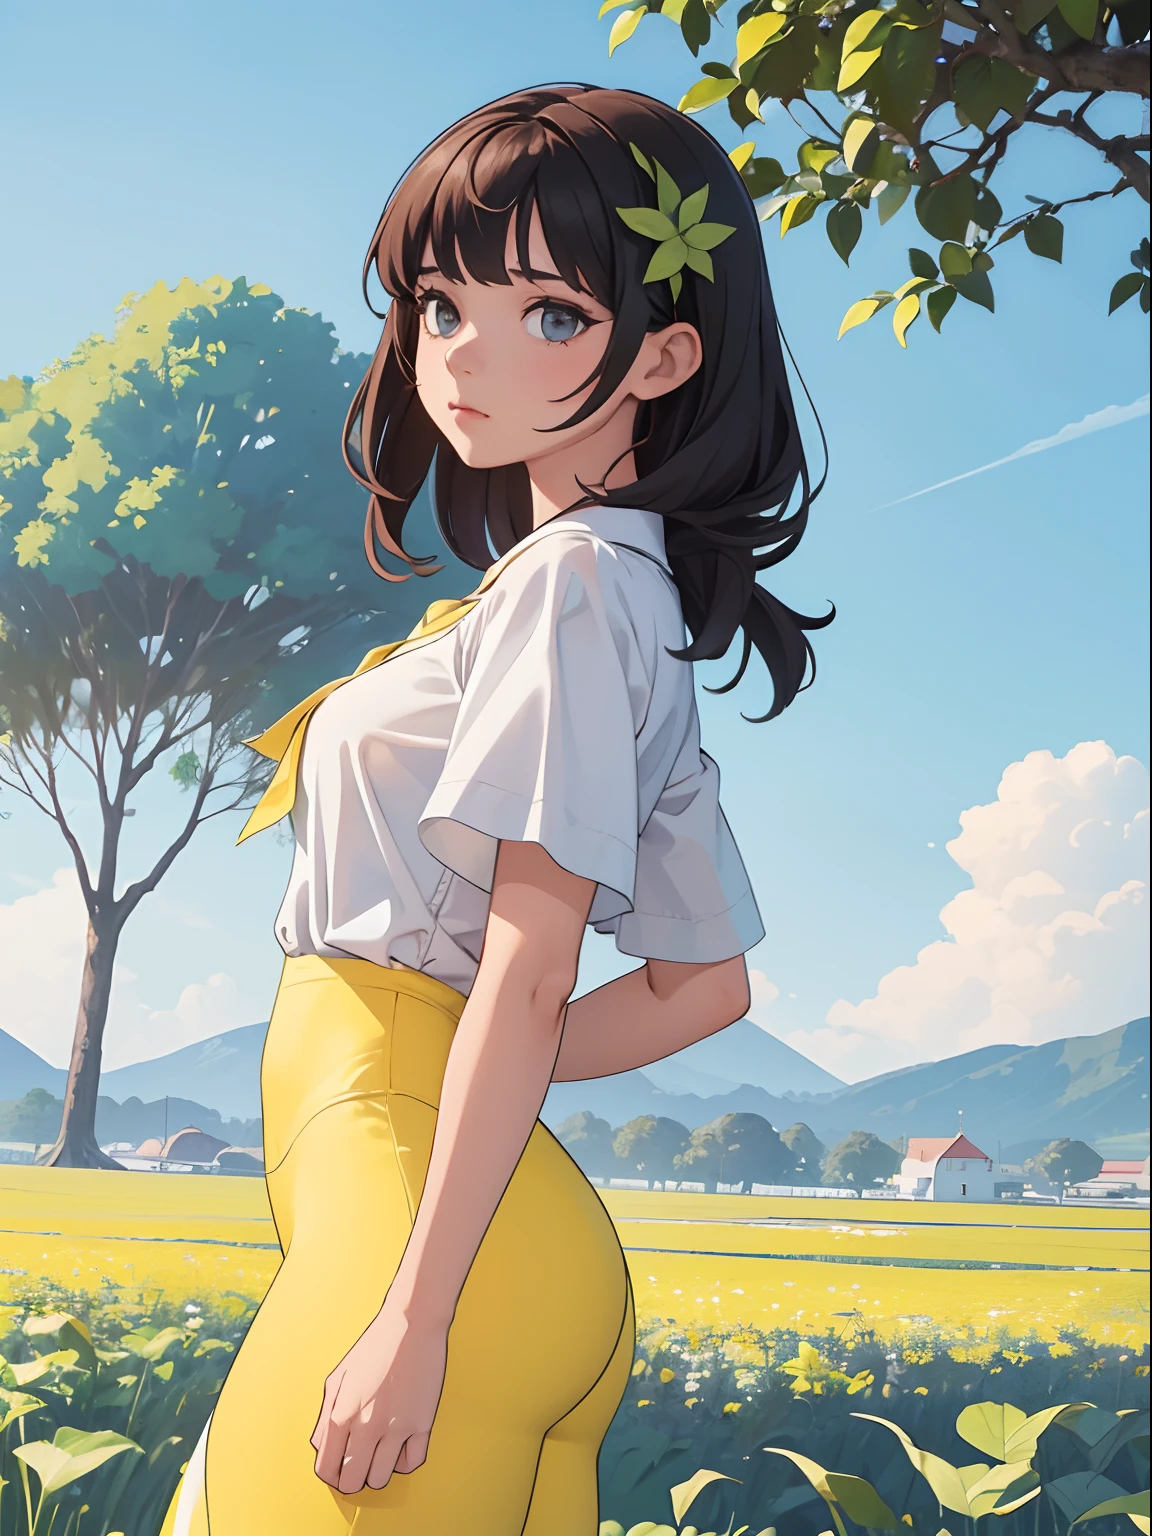 ((Pflanze mit weißen Blättern)), 1perfektes Mädchen, Schönes Gesicht, trägt eine weiße Bluse und gelbe Leggings, mit einer wunderschönen Landschaft dahinter, 4k, ((beste Auflösung)), ((Bessere Qualität)).